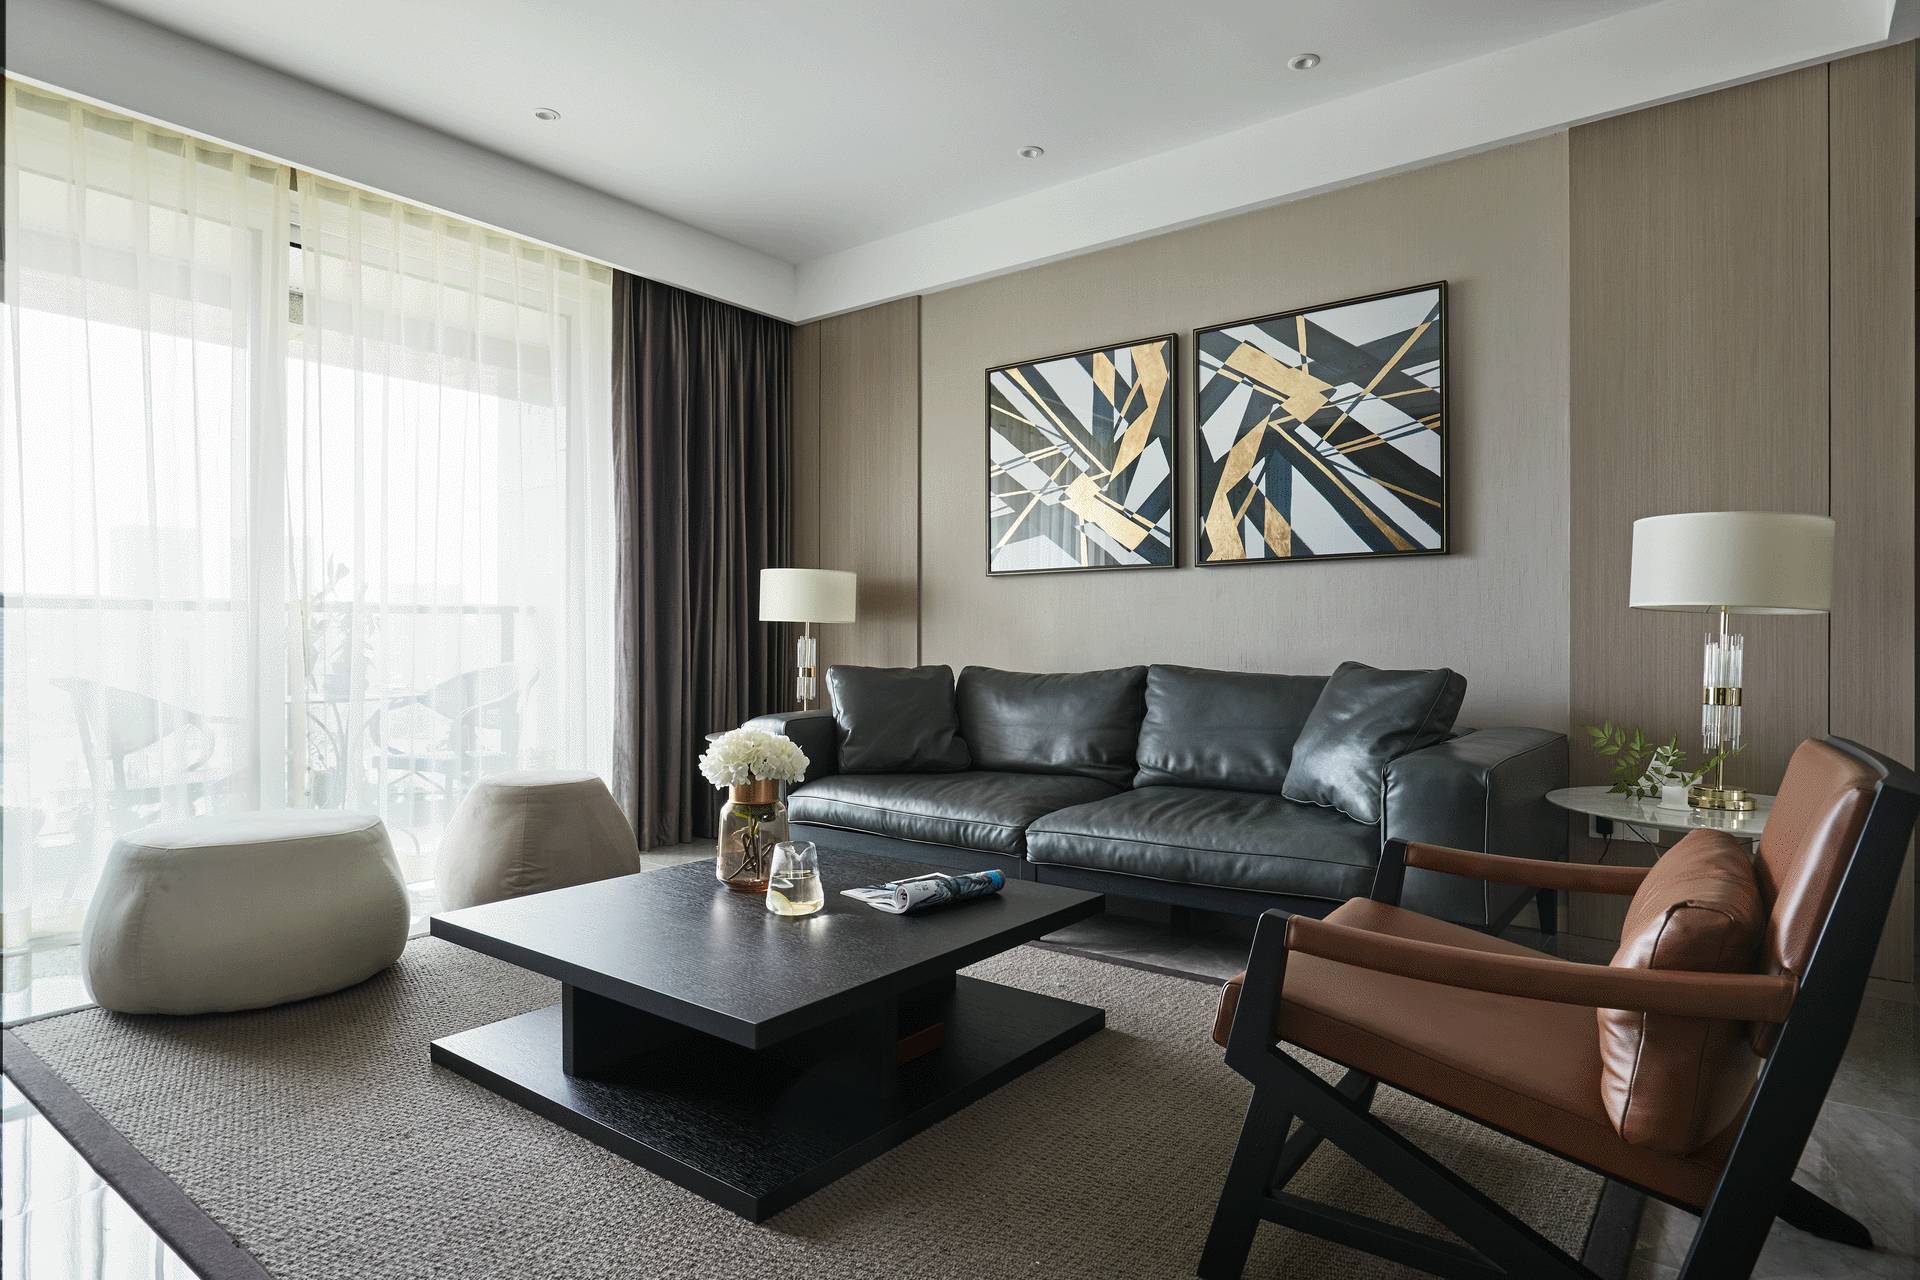 沙发墙装修效果图精简现代装修风格复式客厅小茶几装饰效果图多元化